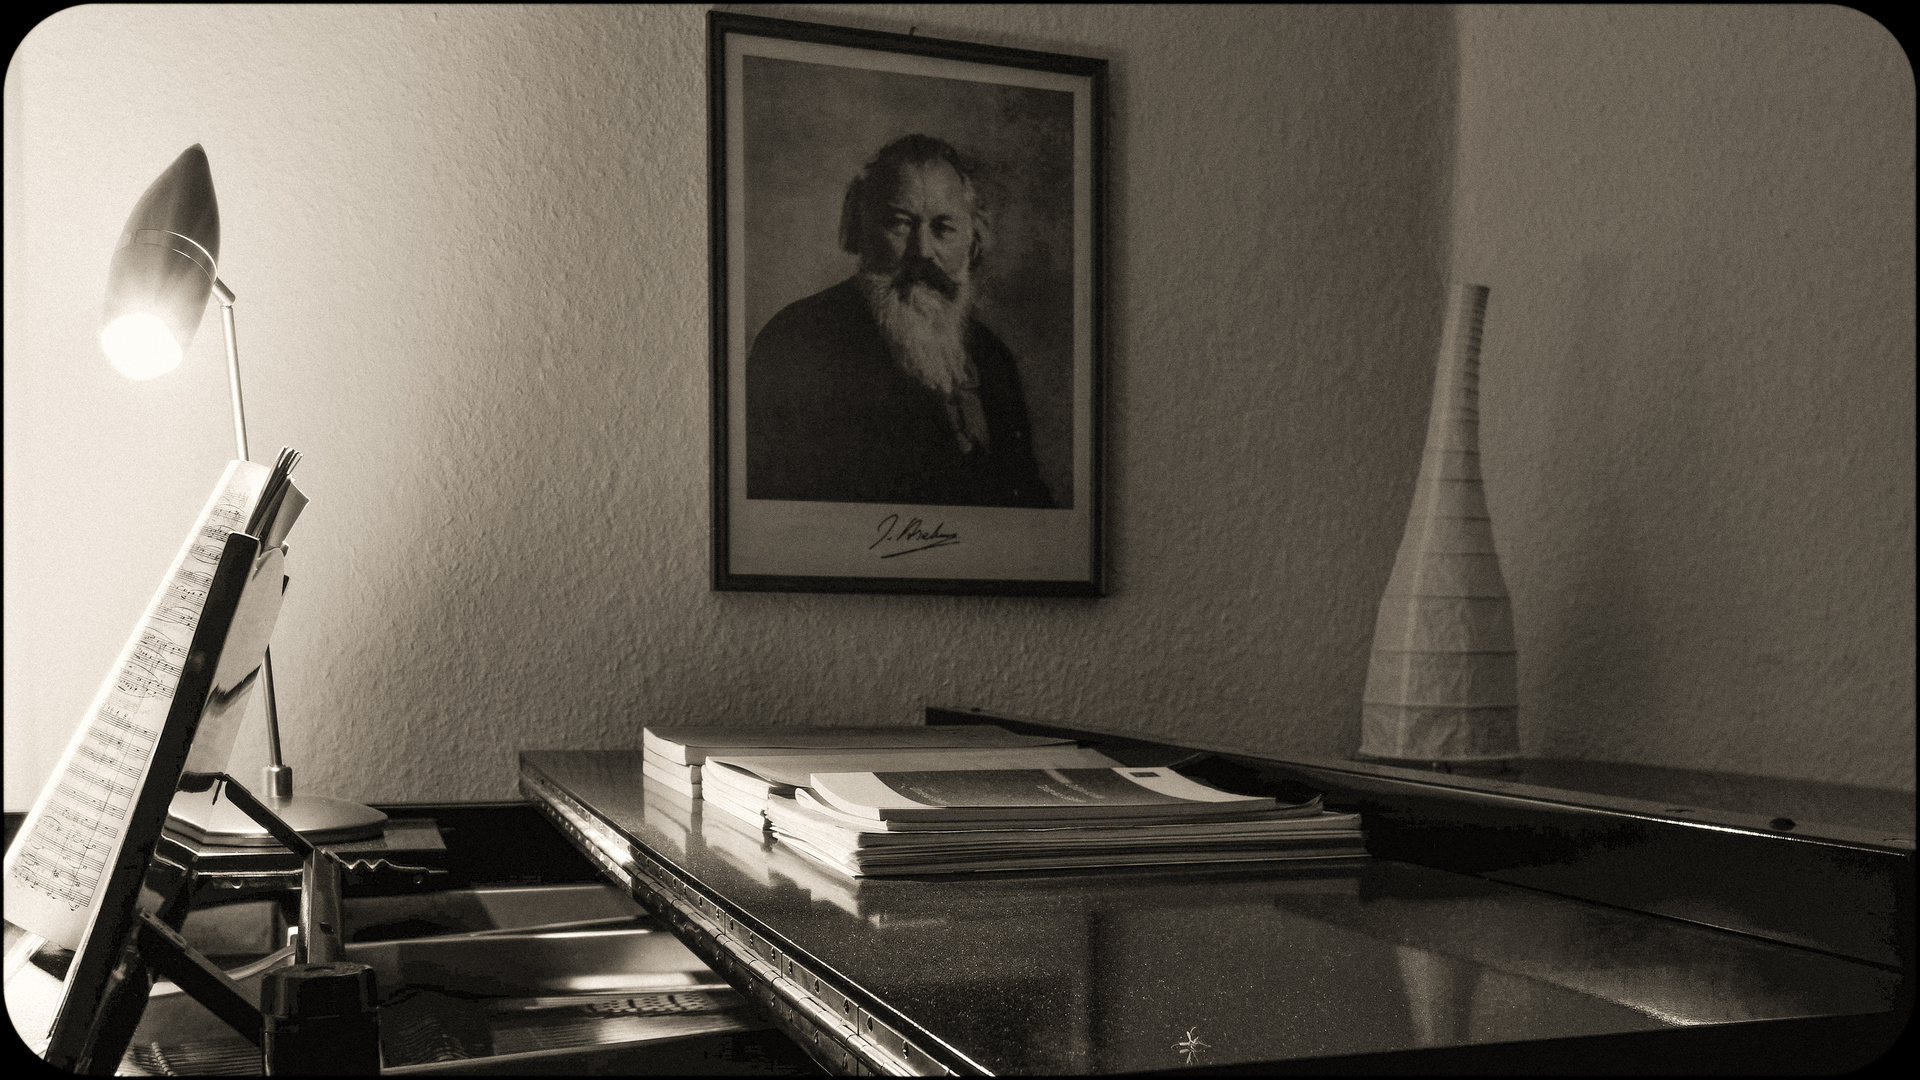 J. Brahms